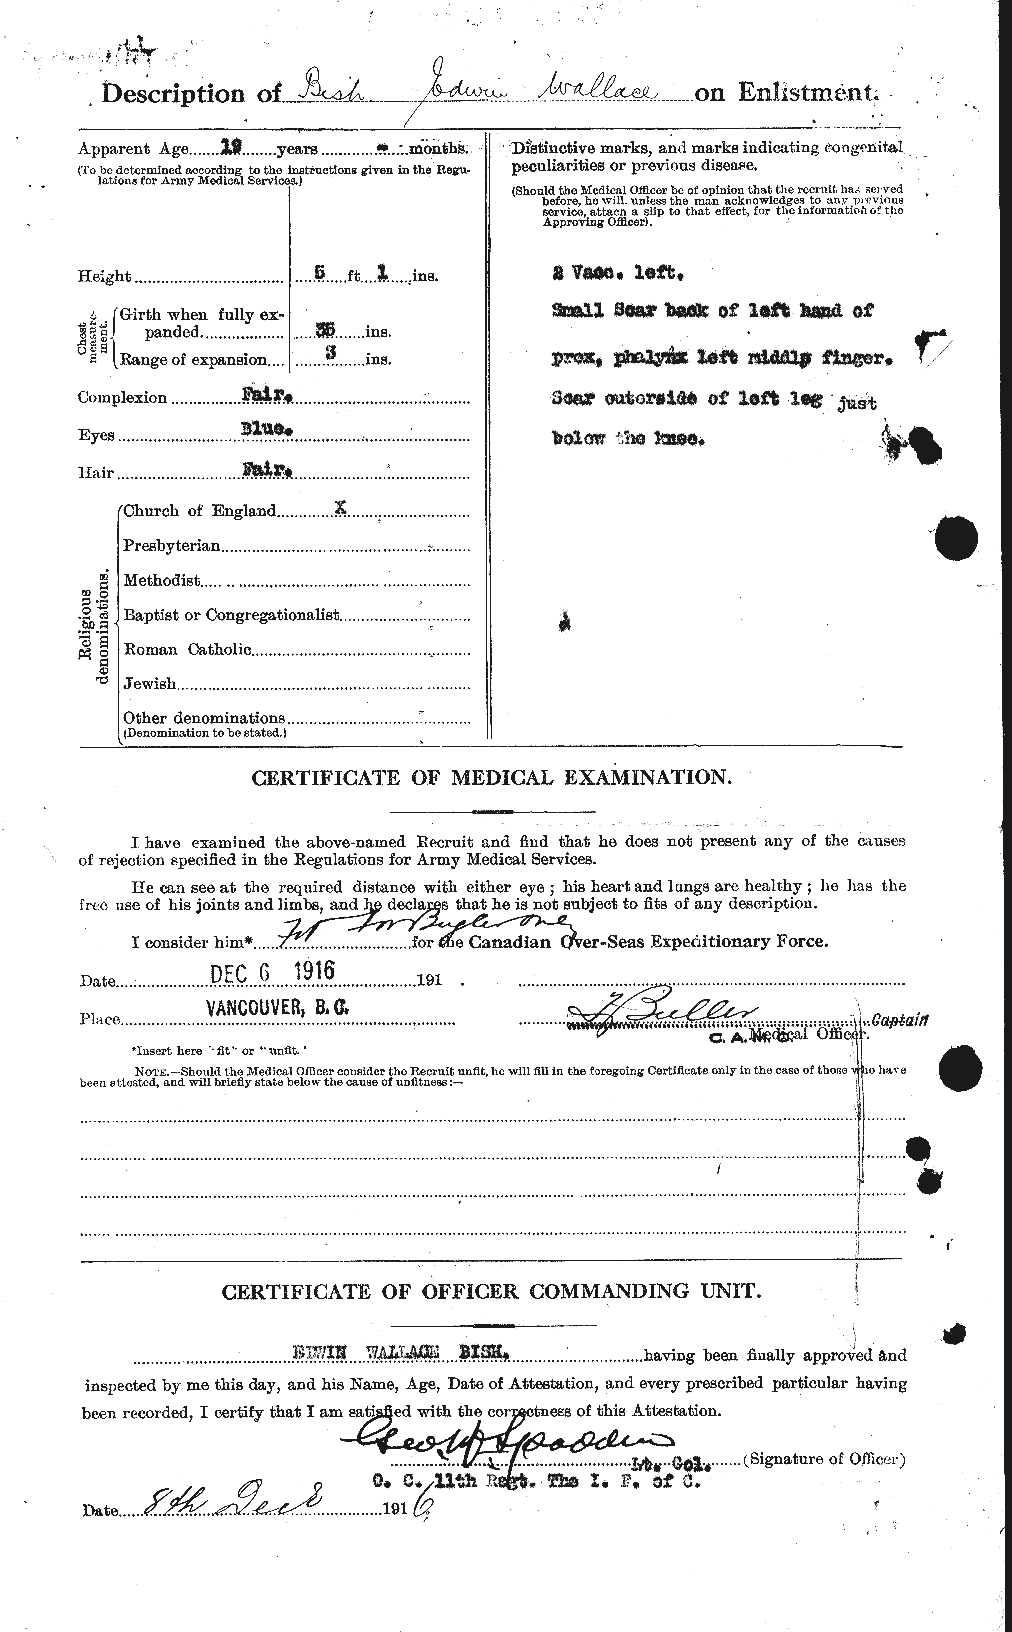 Dossiers du Personnel de la Première Guerre mondiale - CEC 244142b